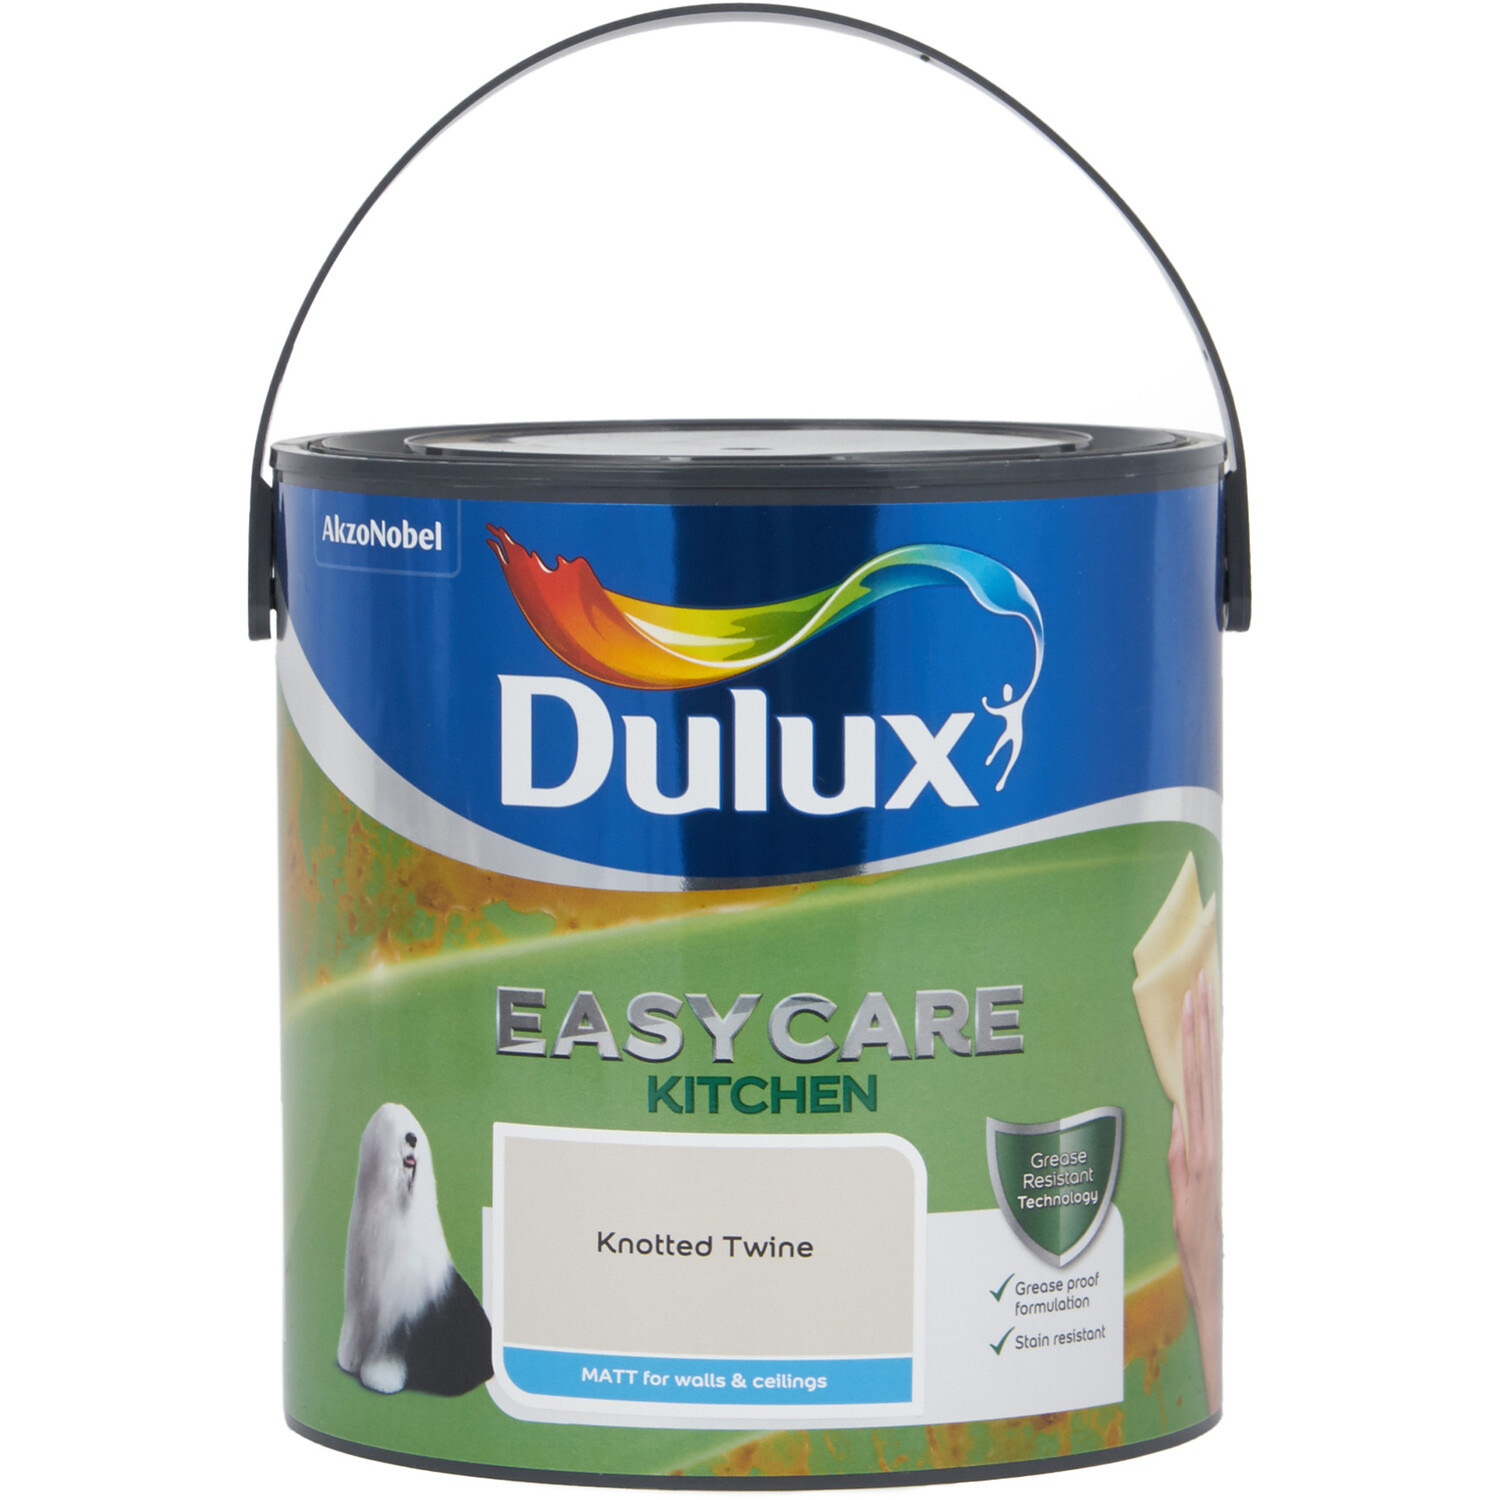 Dulux Easycare Kitchen Knotted Twine Matt Emulsion Paint 2.5L Image 2